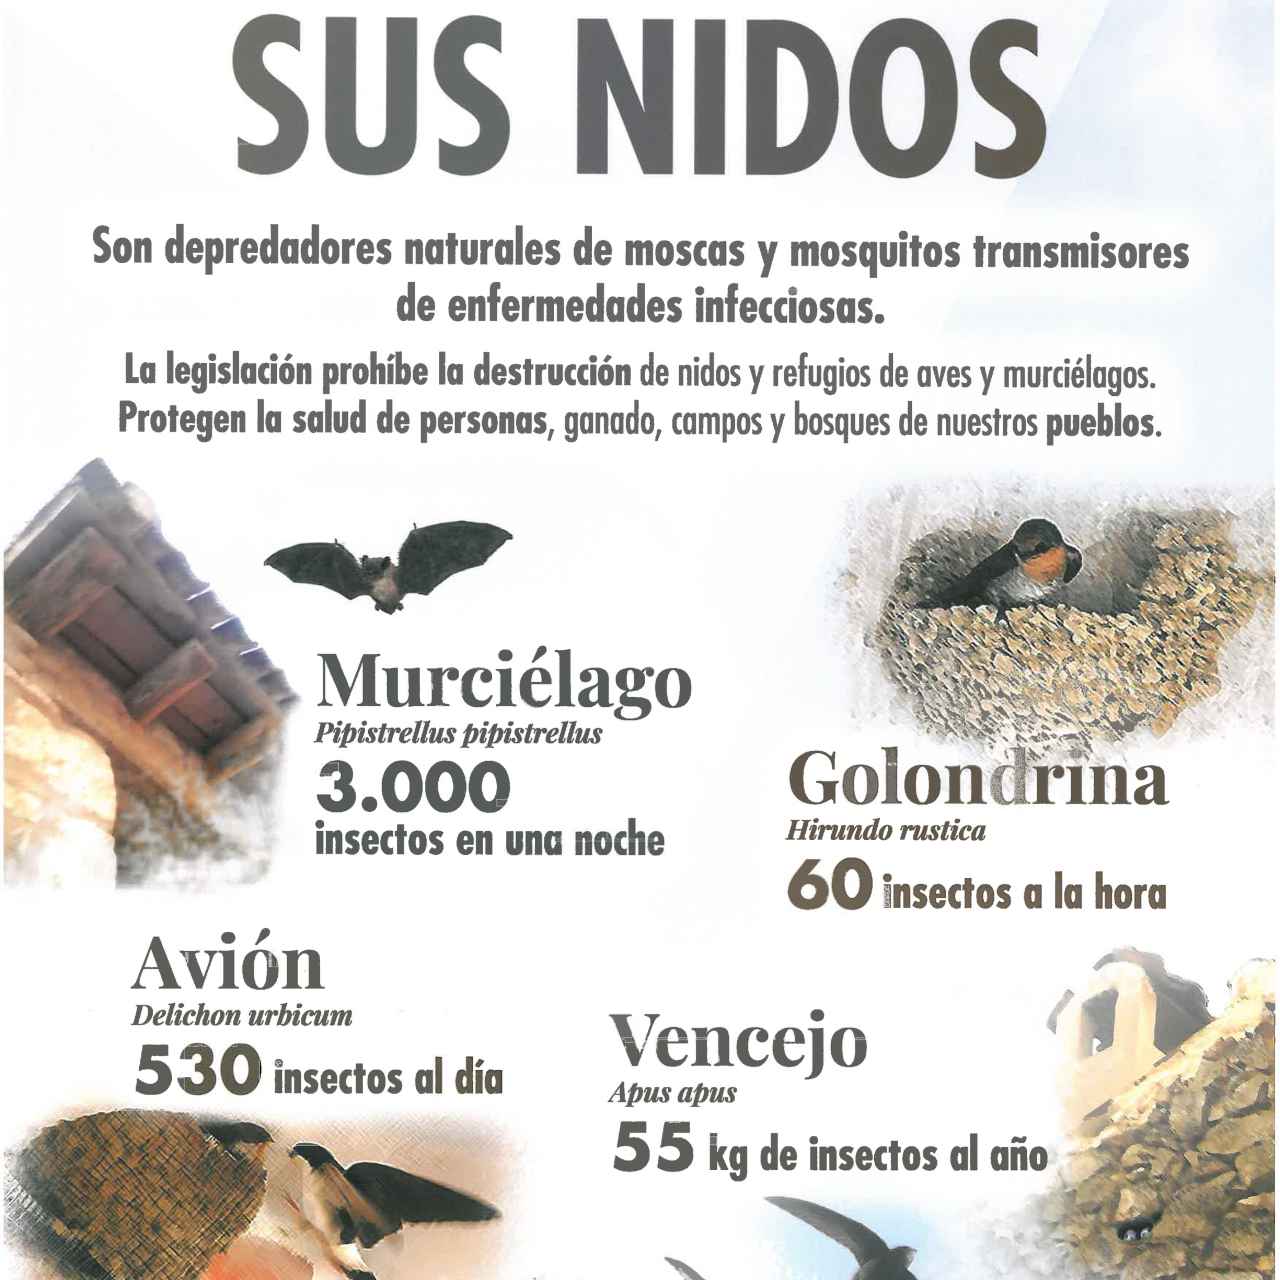 Cartel de la Diputación de Segovia sobre la destrucción de los nidos de aviones, vencejos y golondrinas